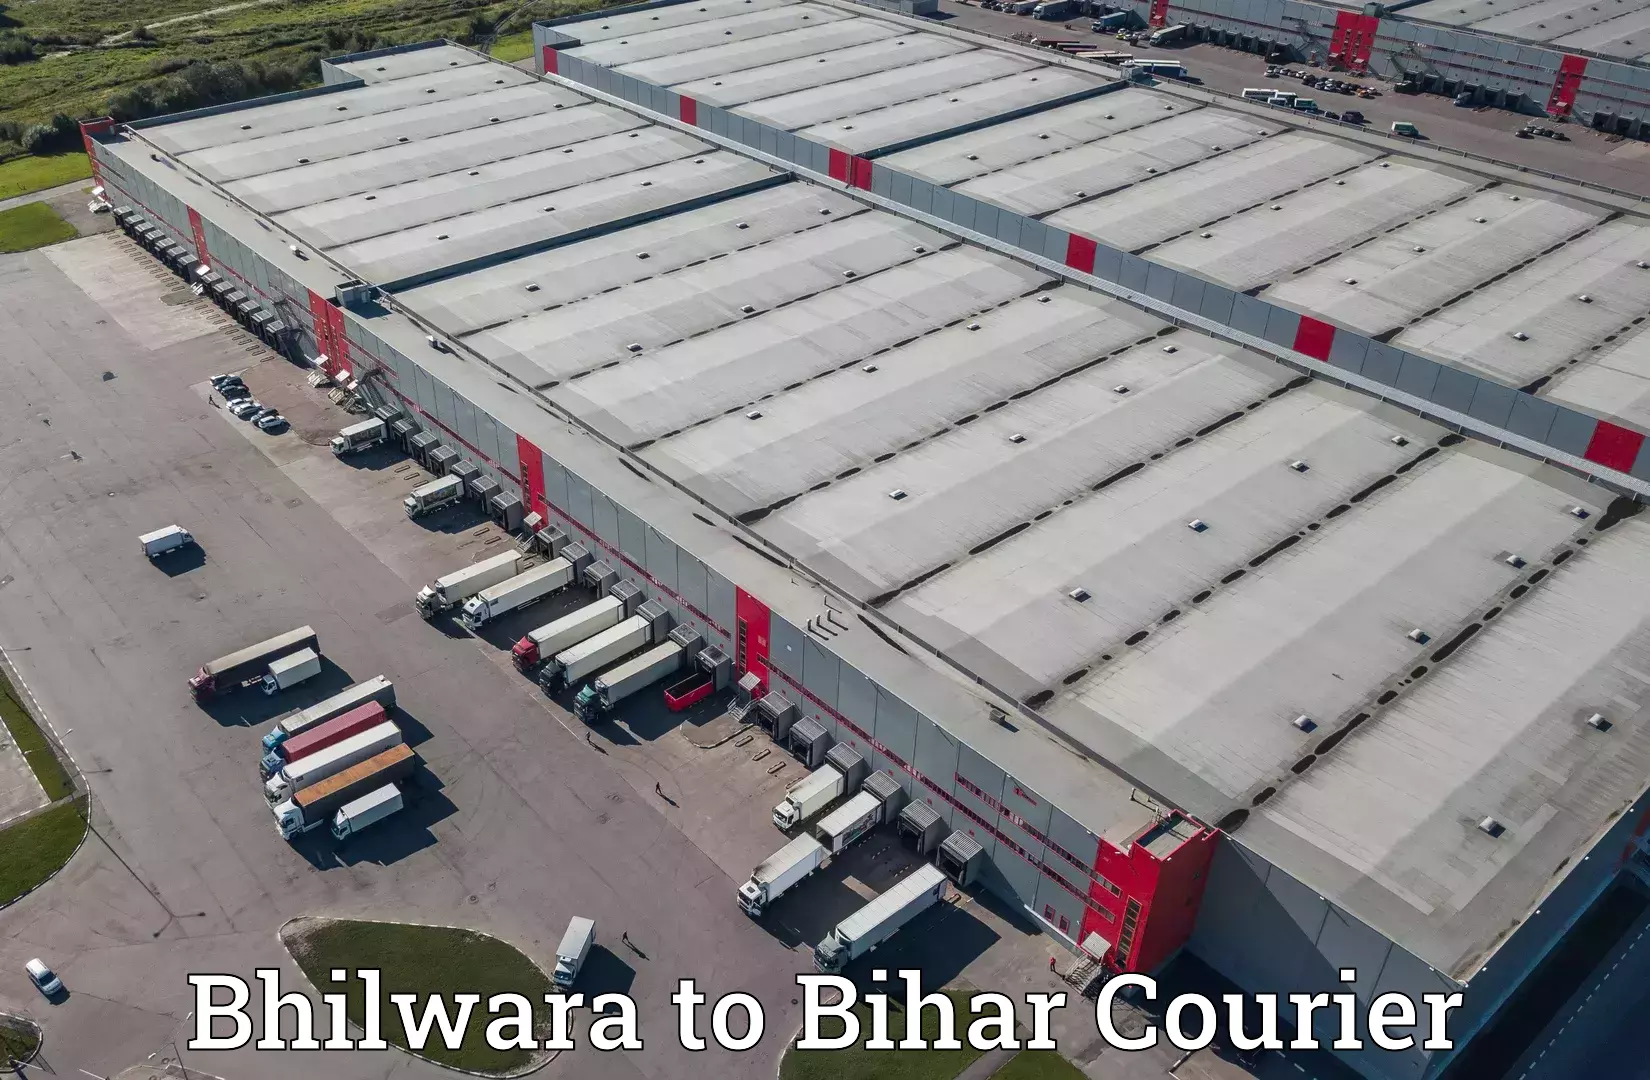 User-friendly courier app Bhilwara to Arrah